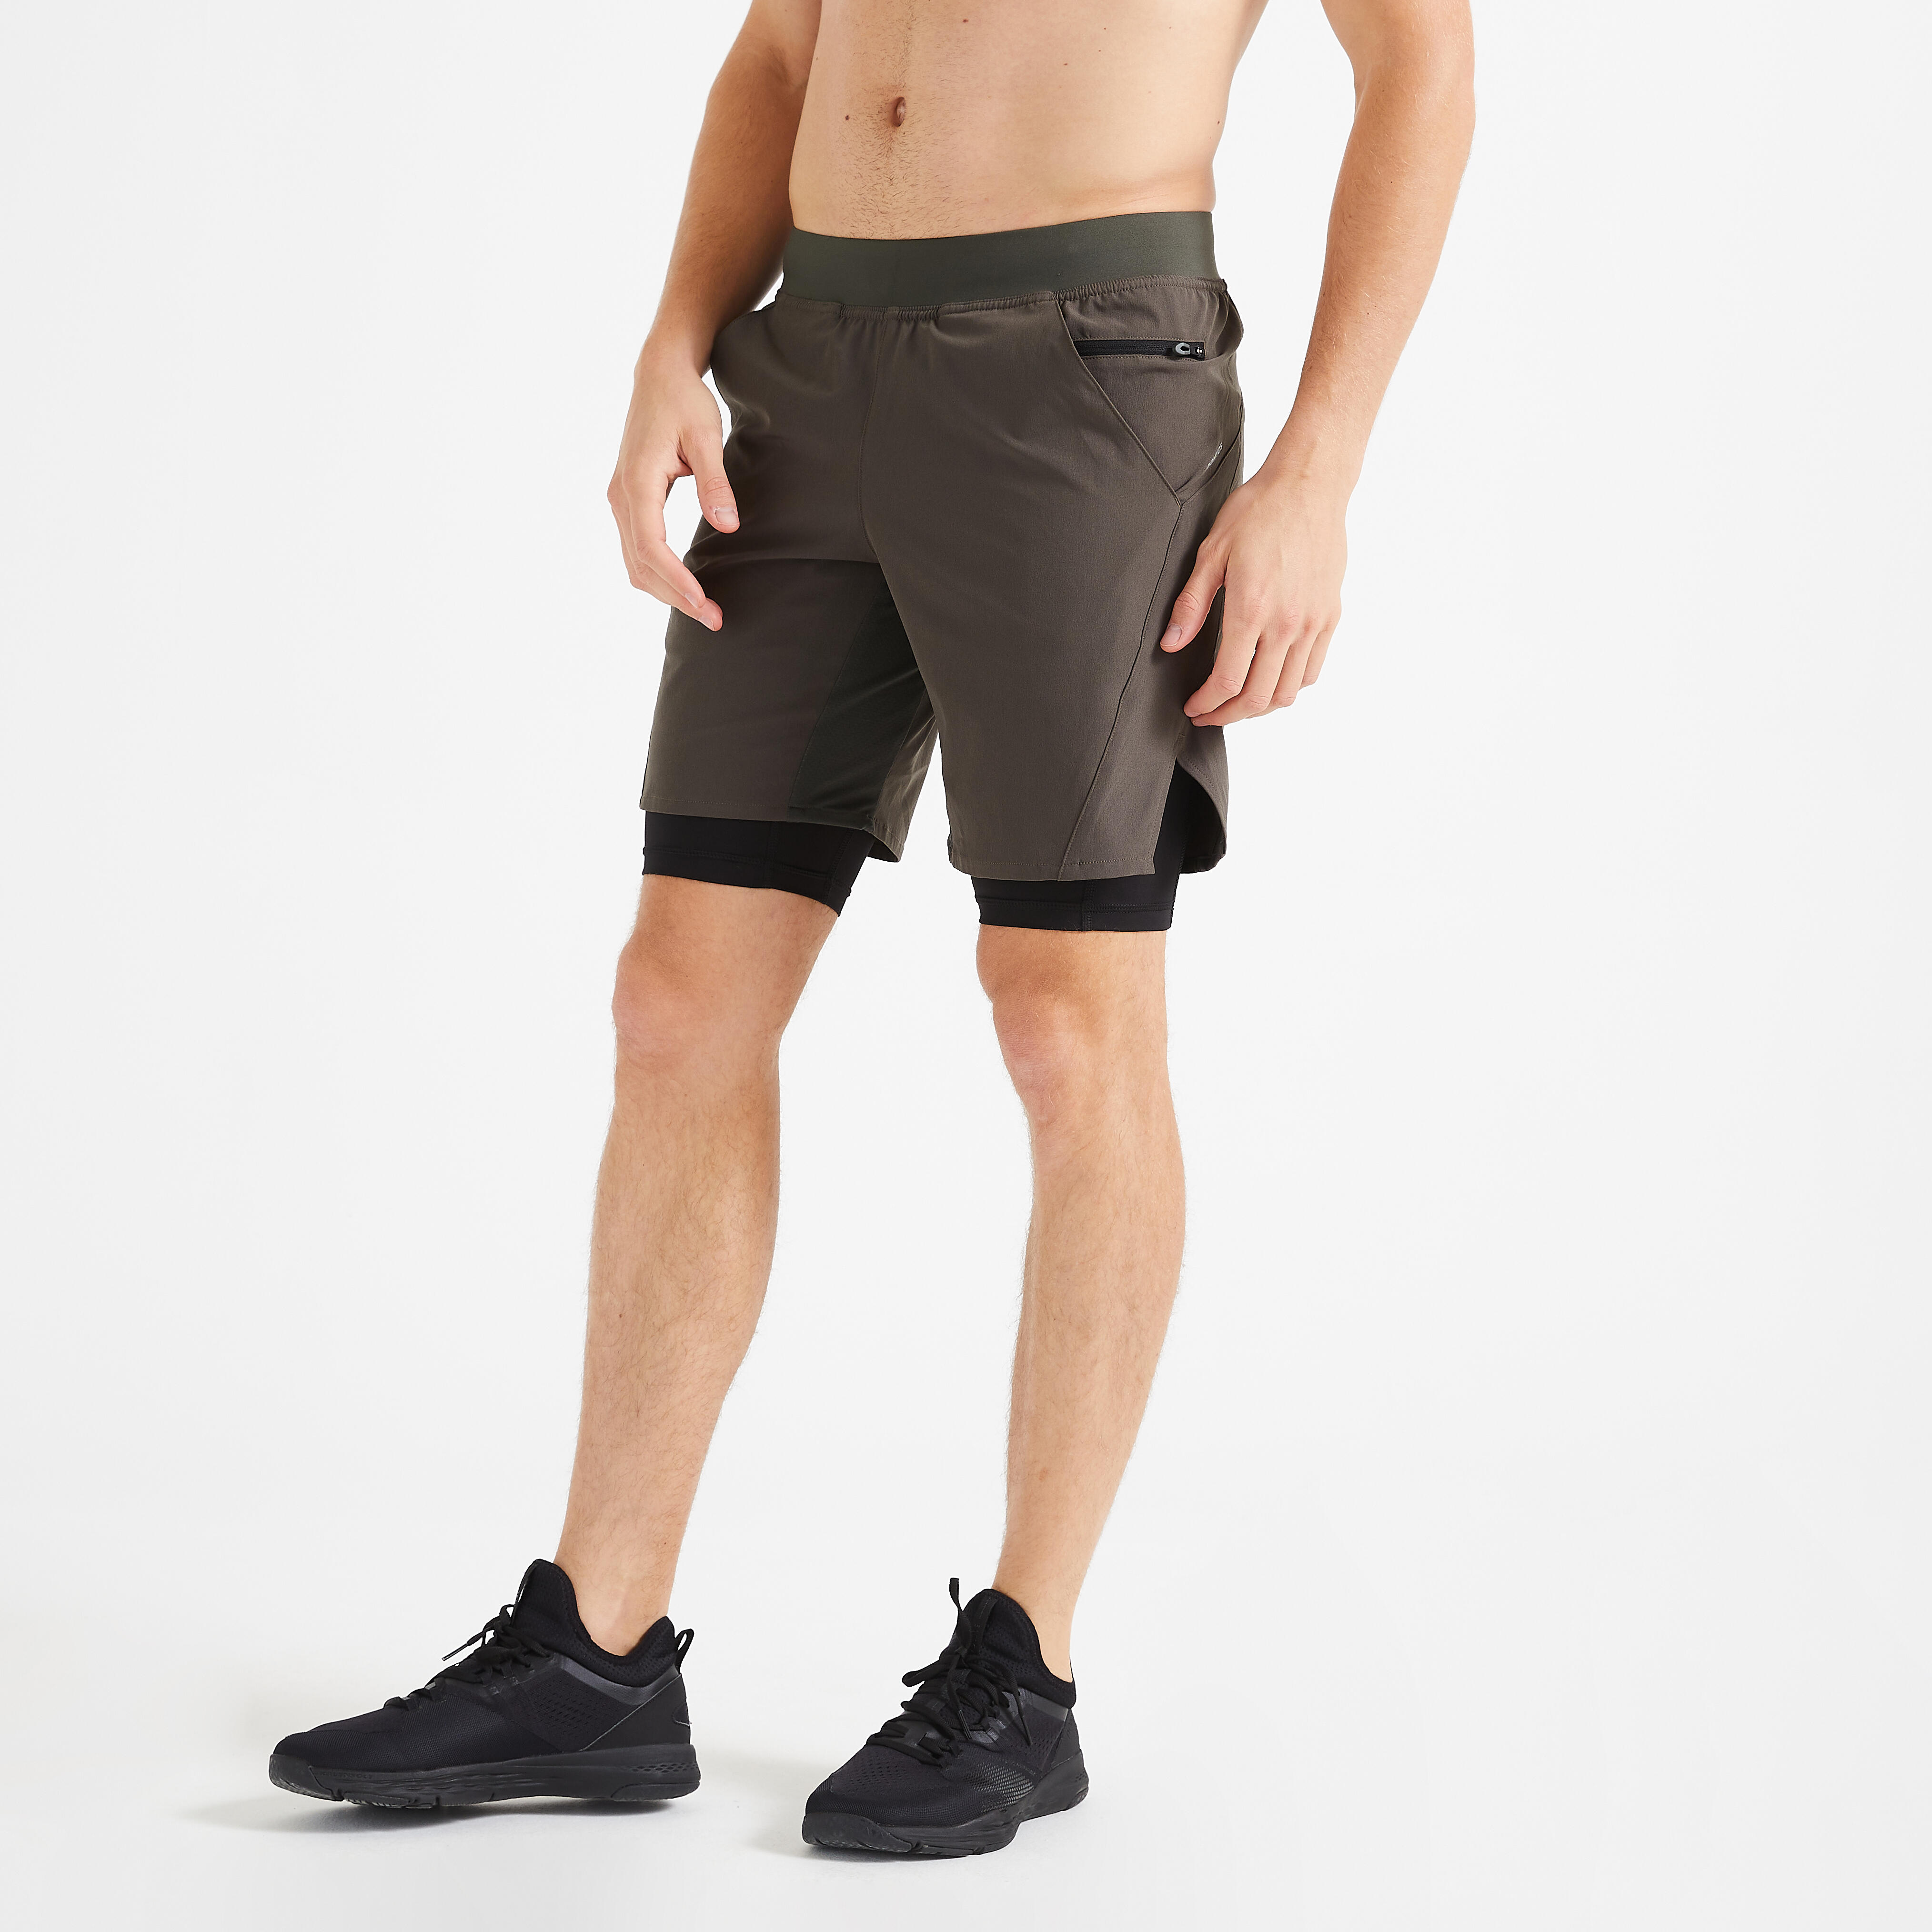 Pantalon scurt 2 în 1 Fitness respirant cu buzunare cu fermoar Kaki Bărbați La Oferta Online decathlon imagine La Oferta Online